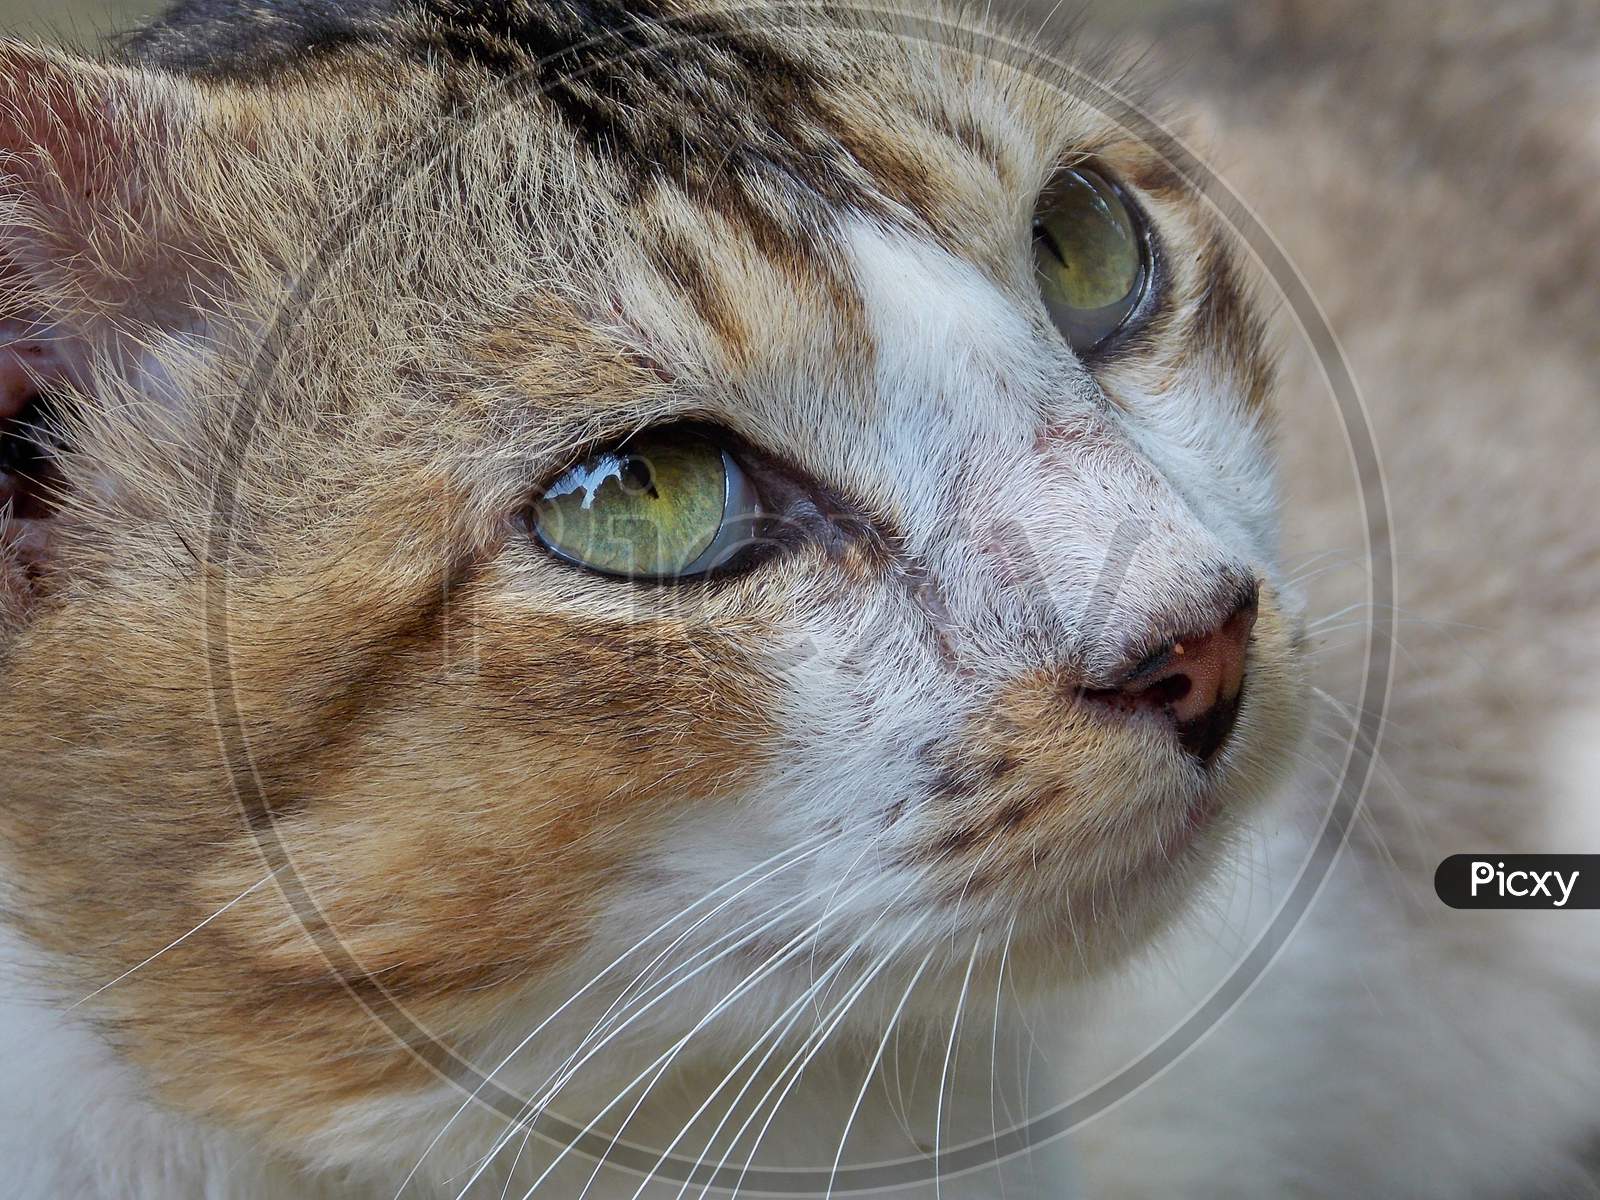 Close up of a cat